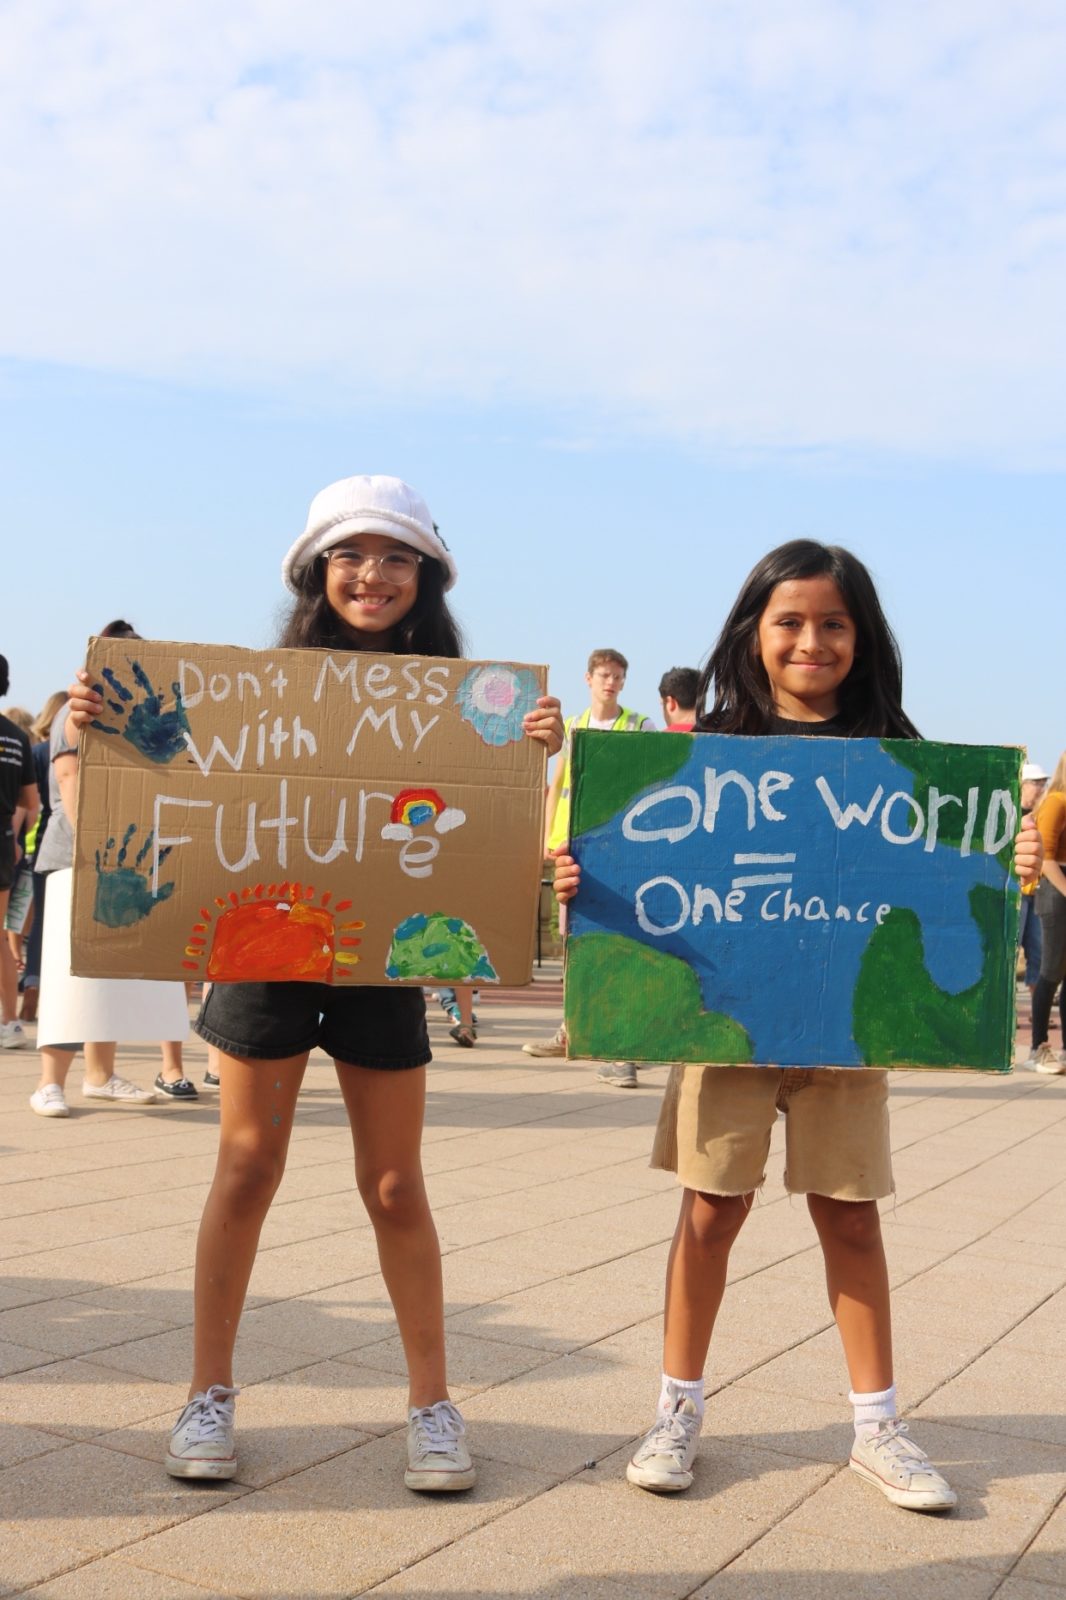 Twee jonge activisten houden borden vast met de tekst "Knoei niet met mijn toekomst" en "Eén wereld, één kans" tijdens de klimaatstaking van september 2019.